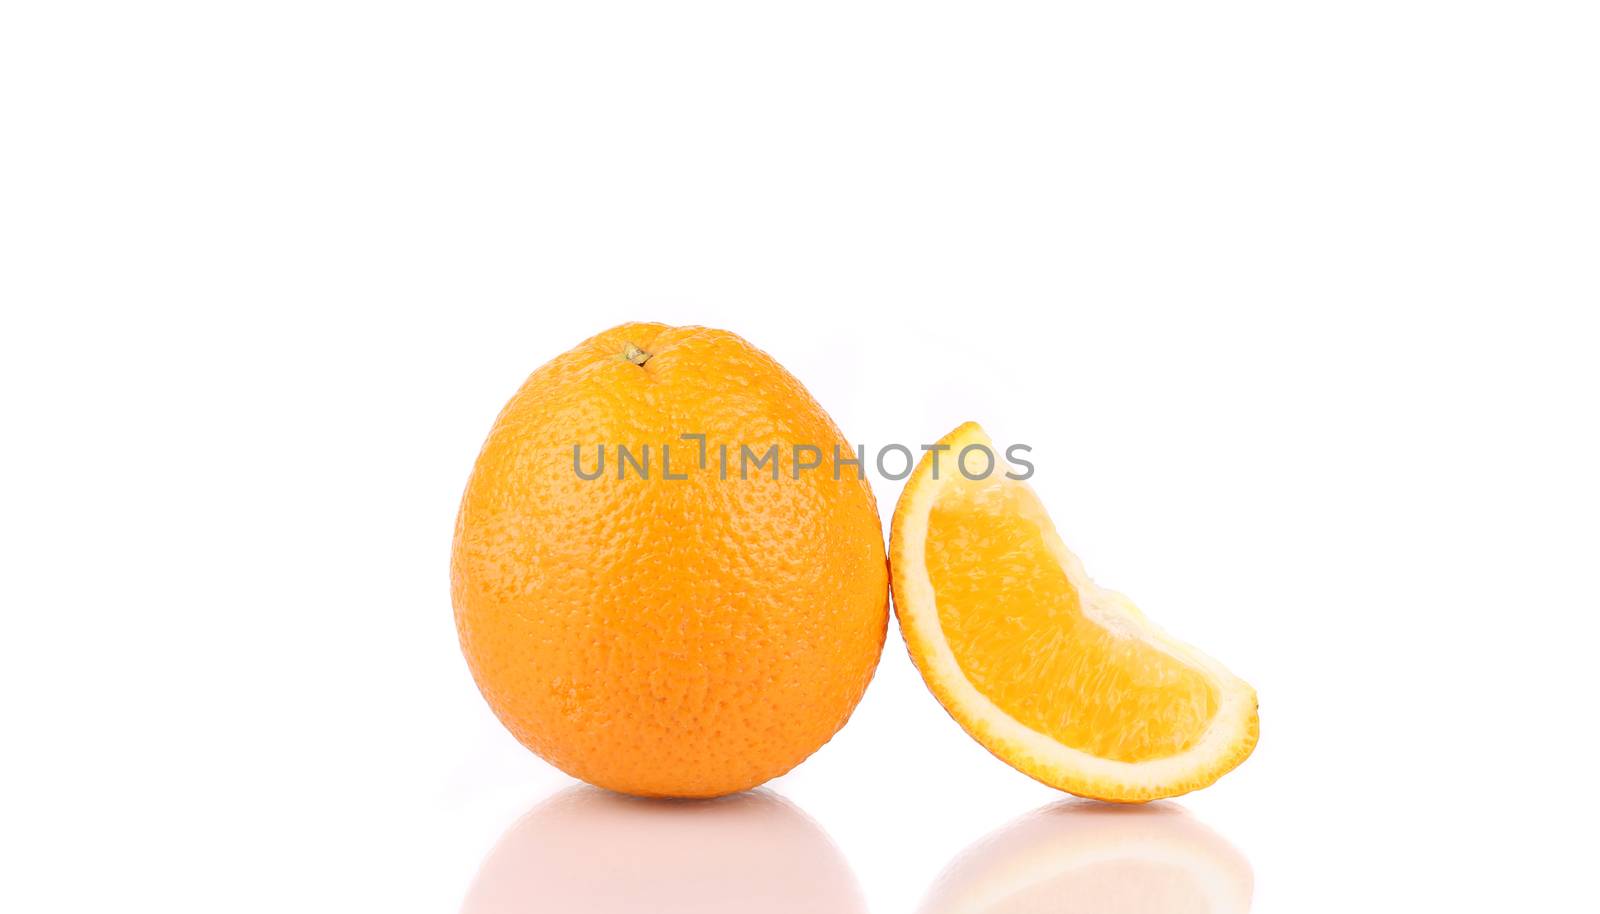 Juicy ripe orange. Isolated on a white background.